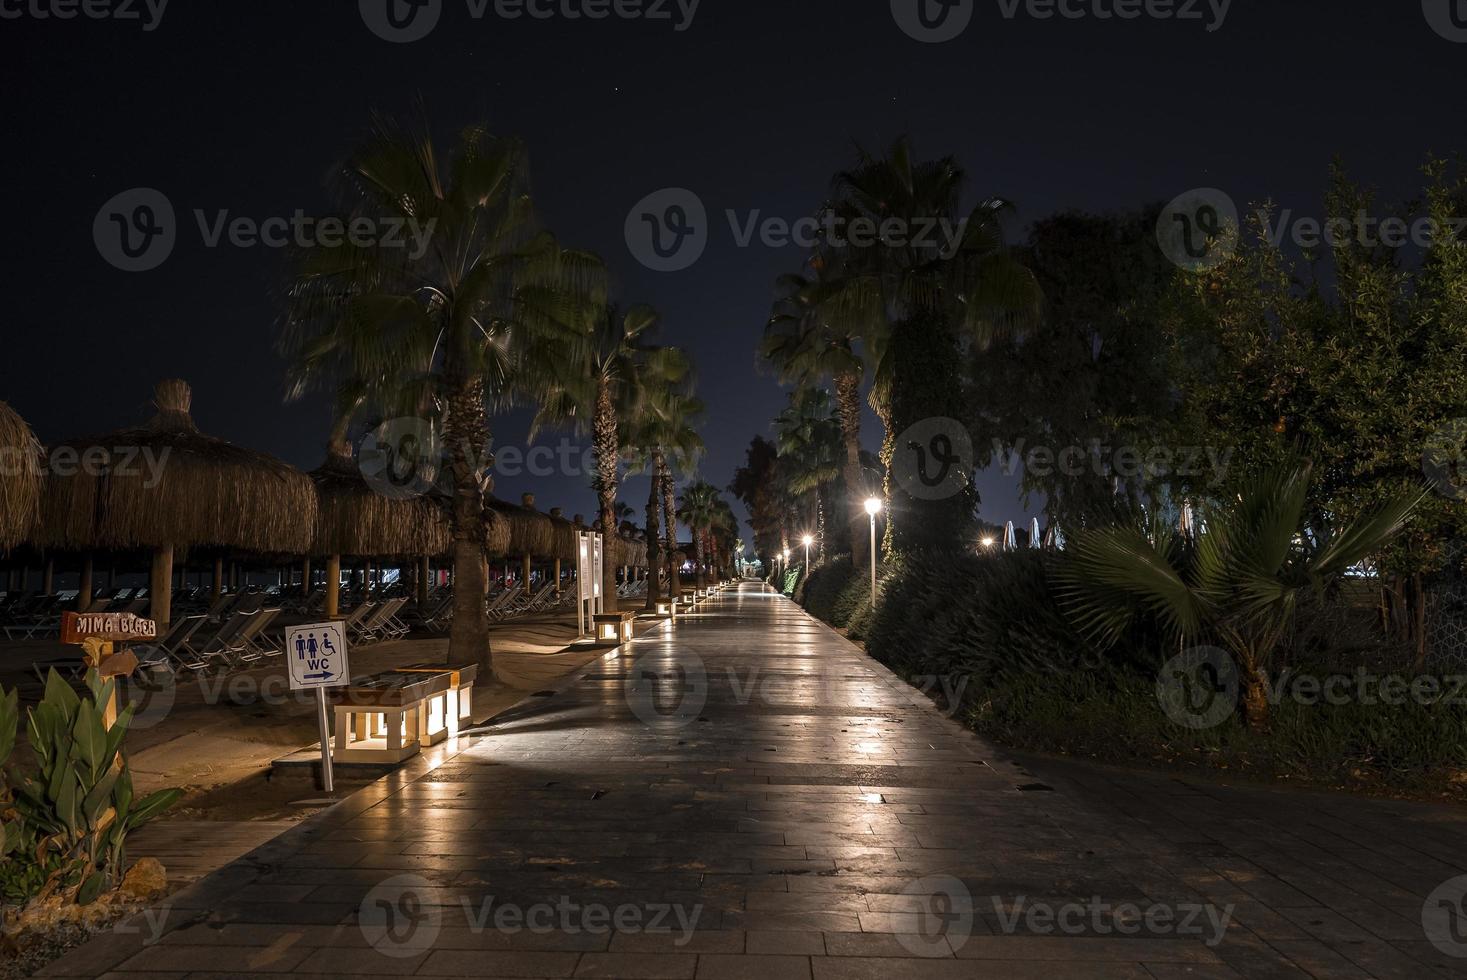 Perspectiva decreciente del sendero entre palmeras en la playa durante la noche foto